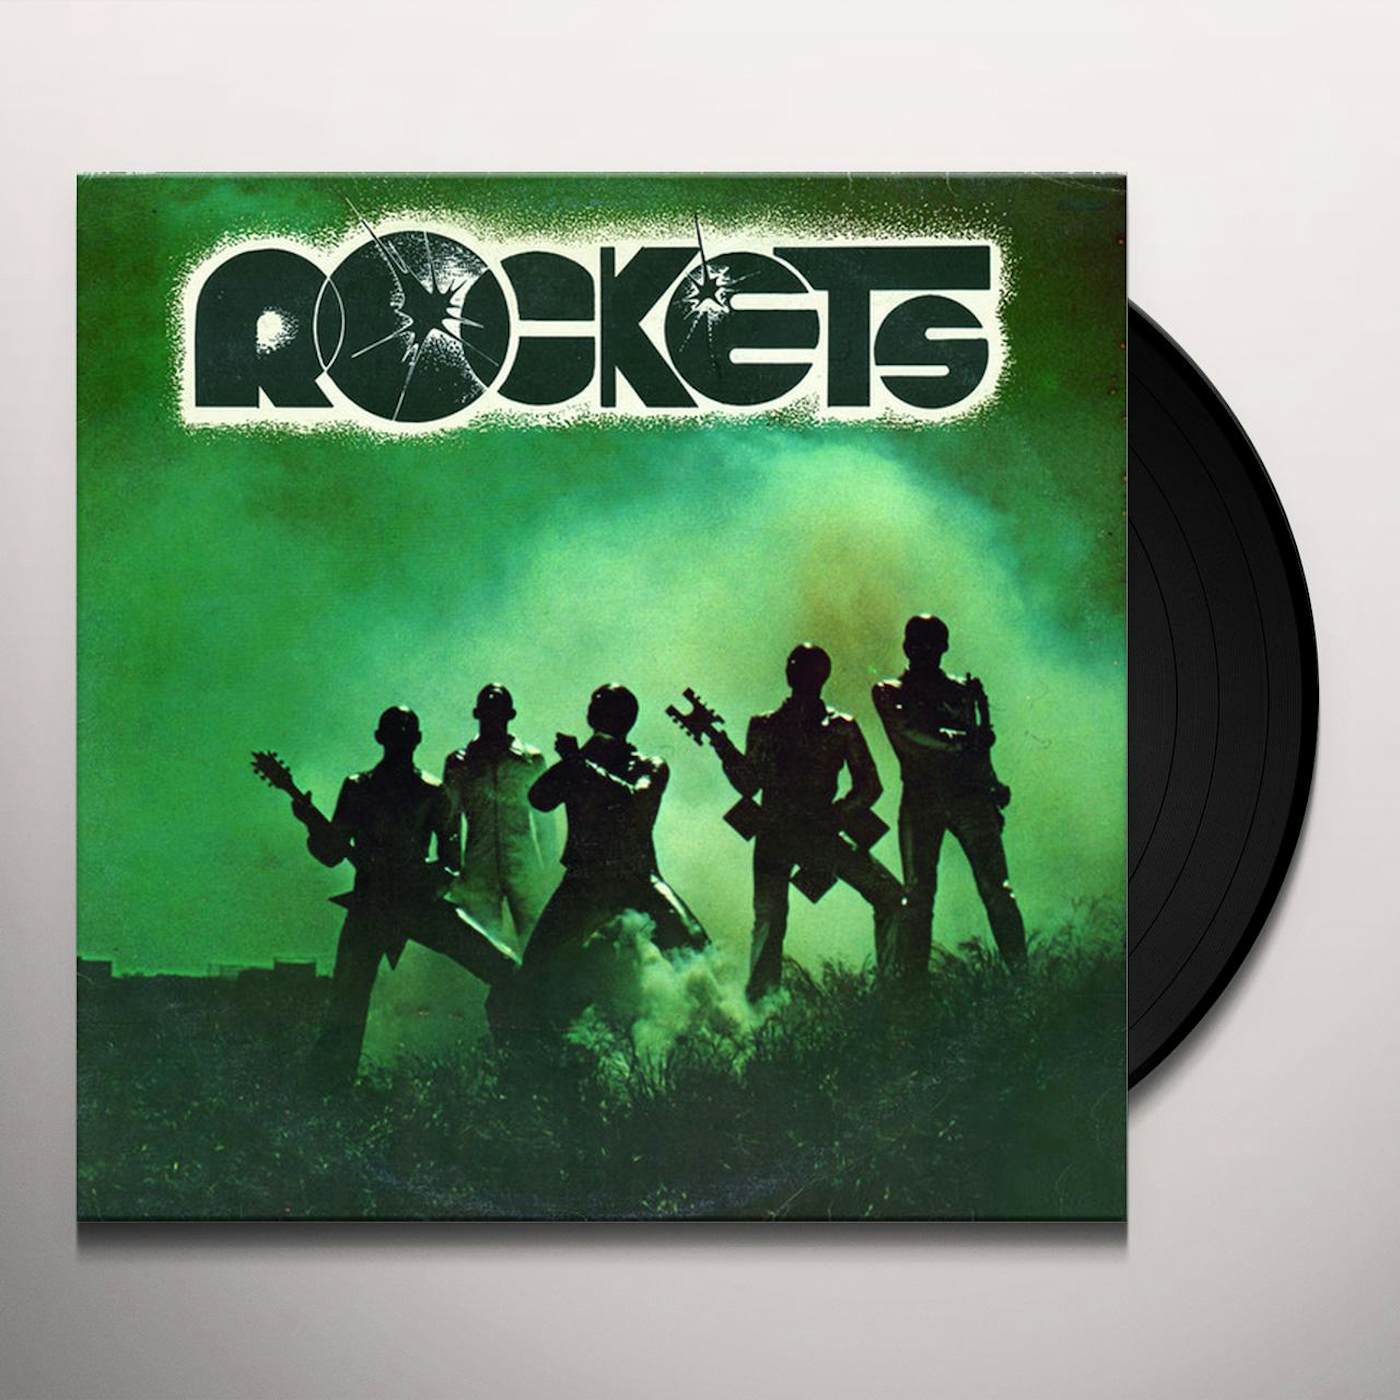 Rockets Vinyl Record